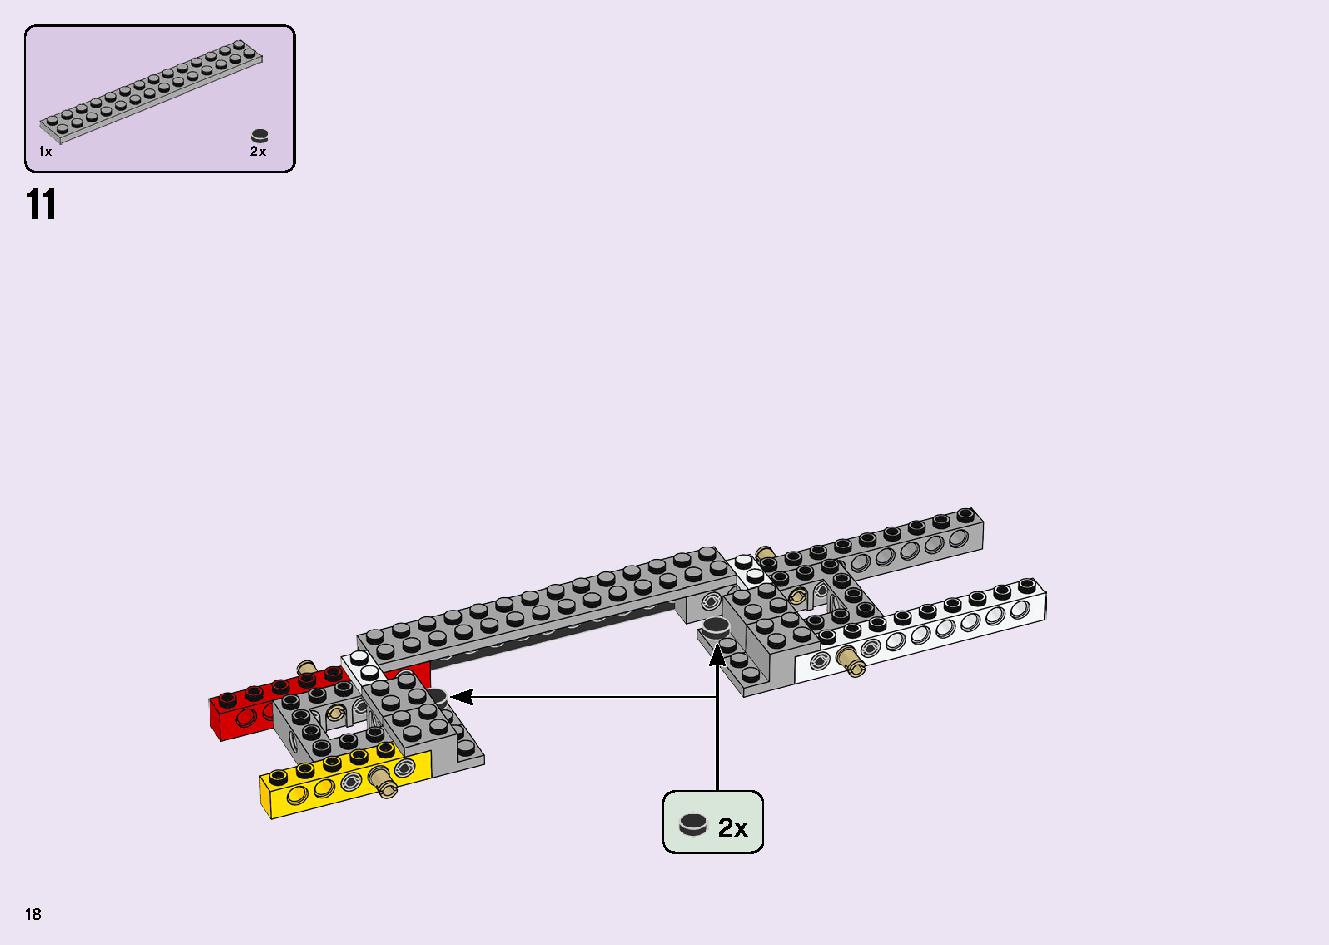 フレンズのうきうきハッピー・バス 41395 レゴの商品情報 レゴの説明書・組立方法 18 page